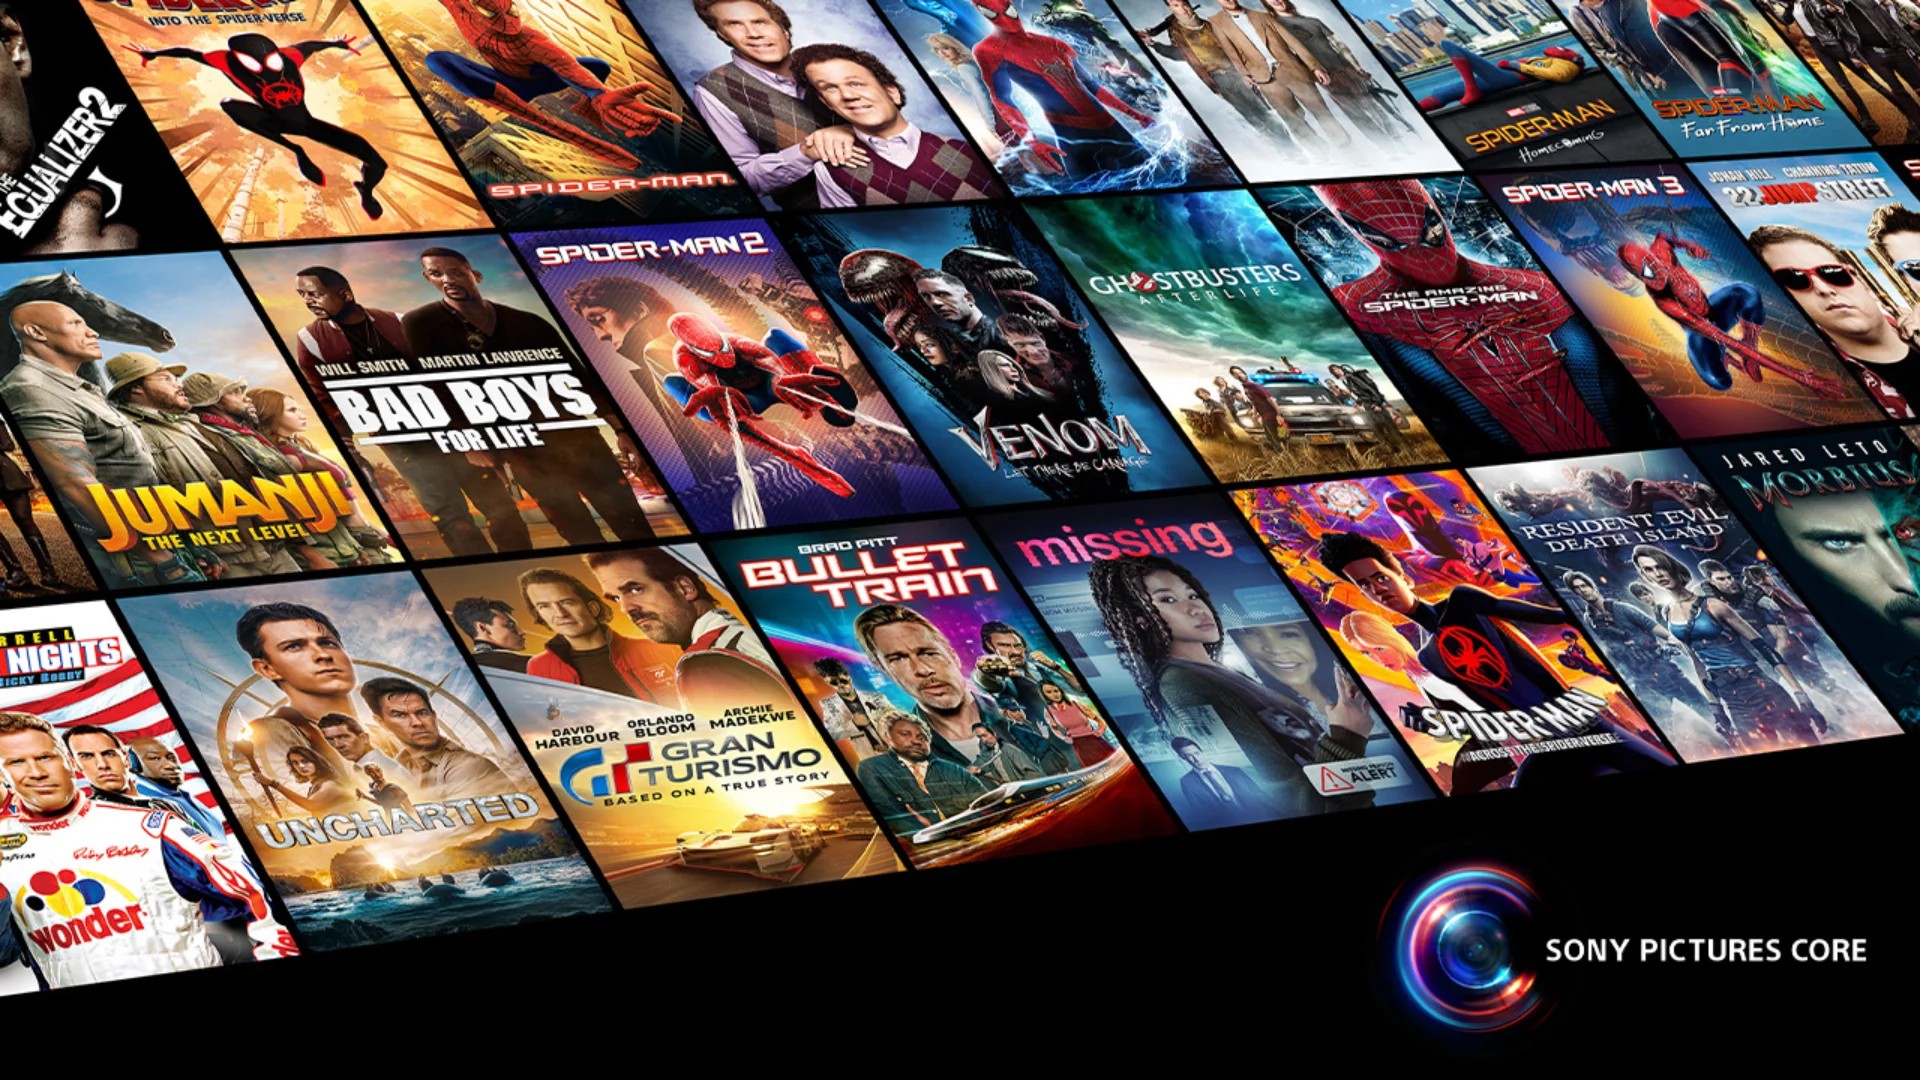 PlayStation Plus Premium receberá streaming de jogos no PS5 via